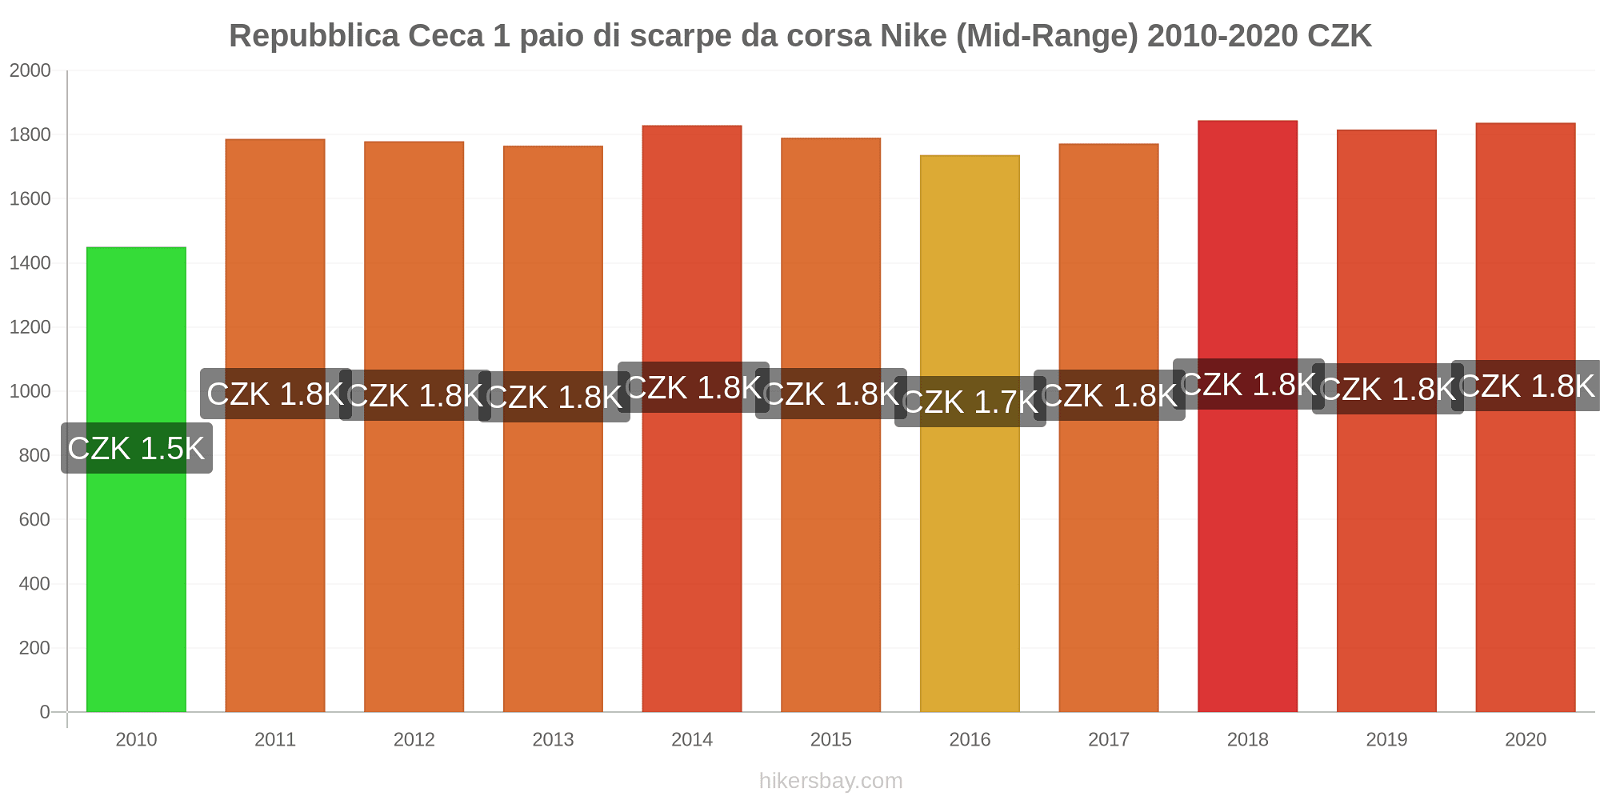 Repubblica Ceca variazioni di prezzo 1 paio di scarpe da corsa Nike (simile) hikersbay.com